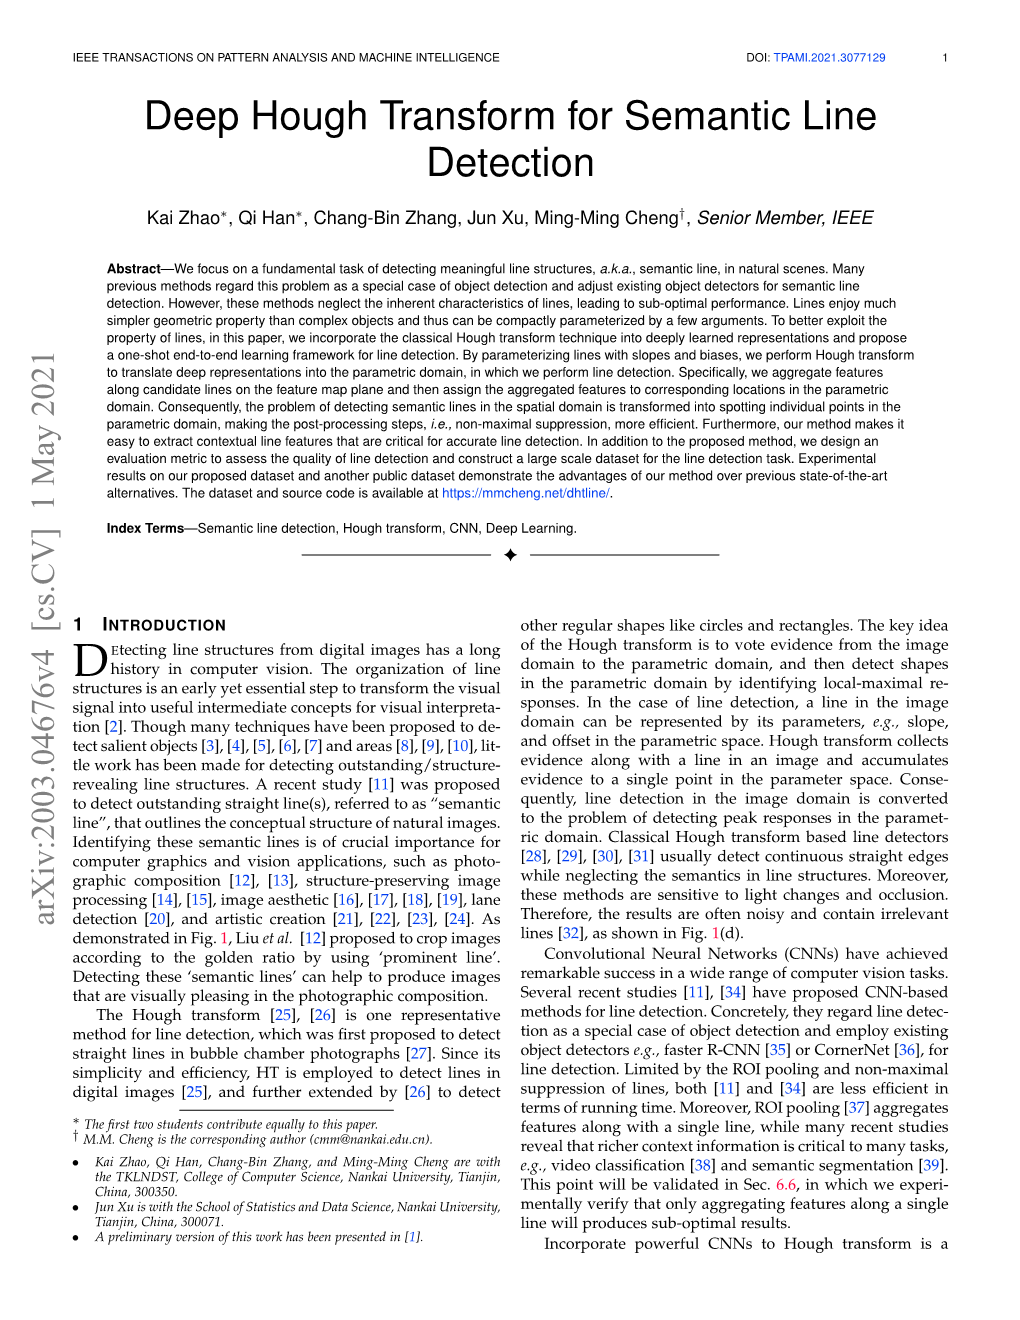 Deep Hough Transform for Semantic Line Detection